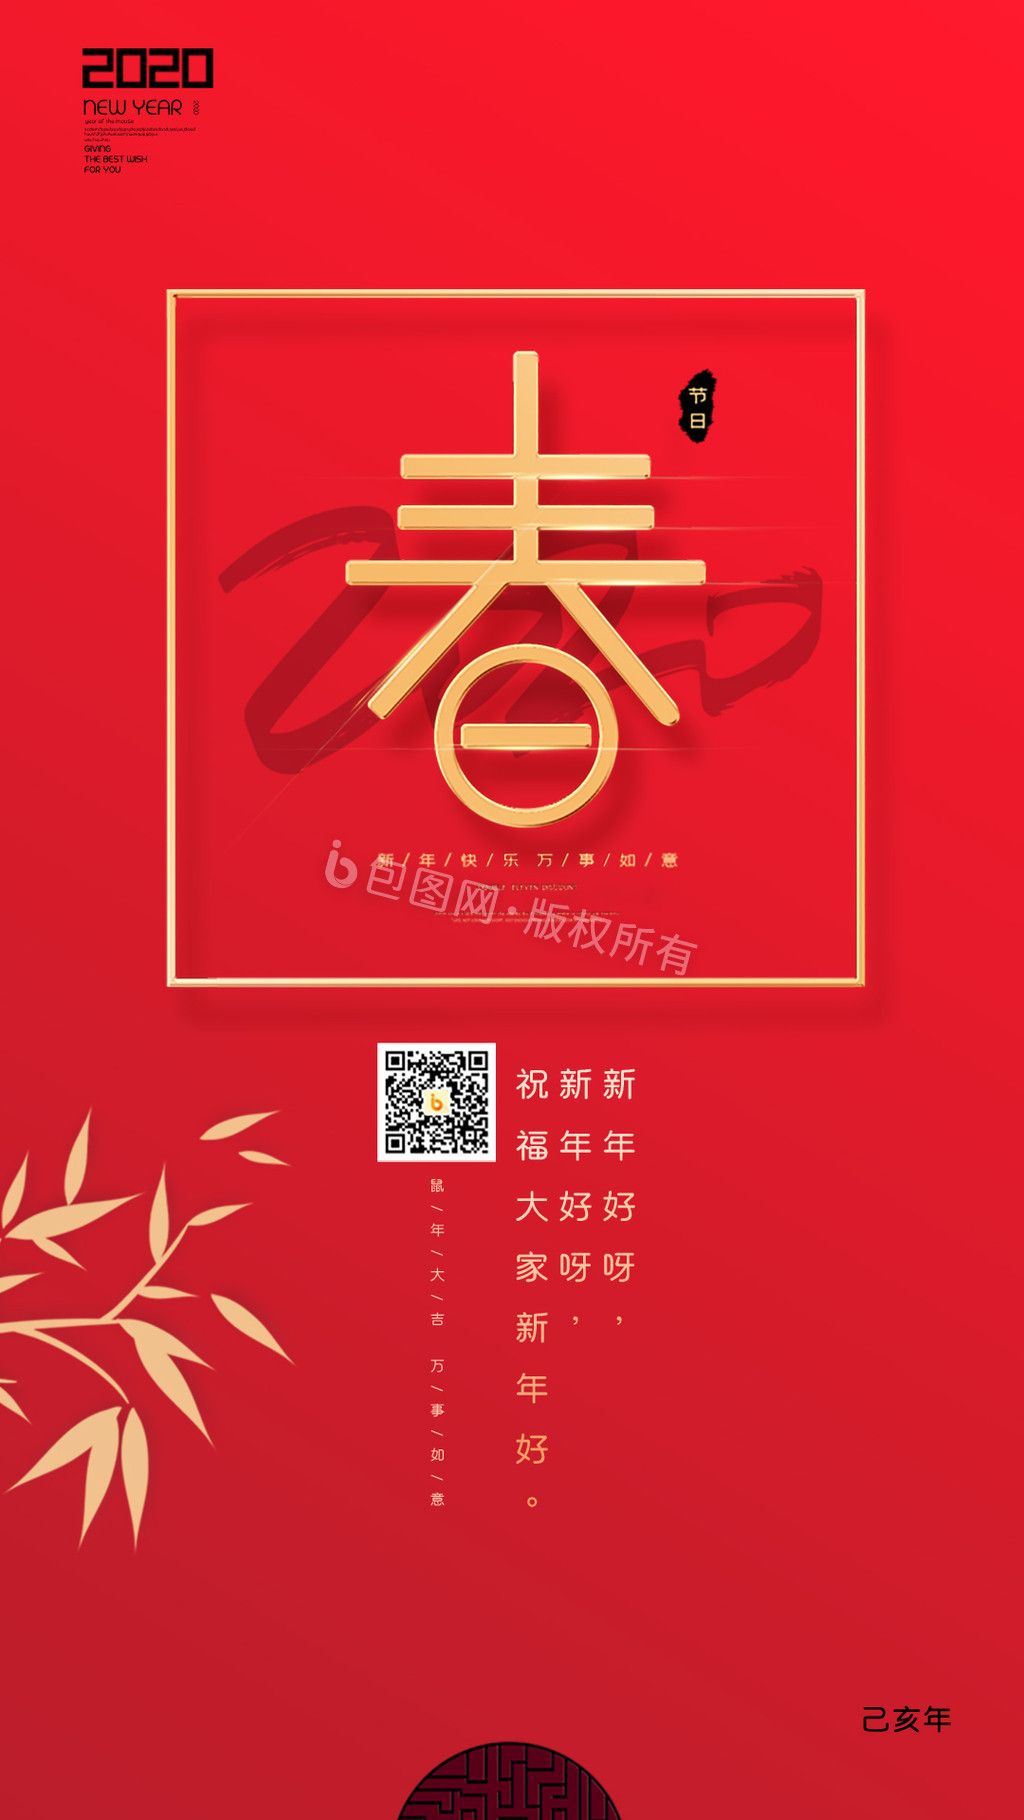 简约2020春节新年动态海报gif图片